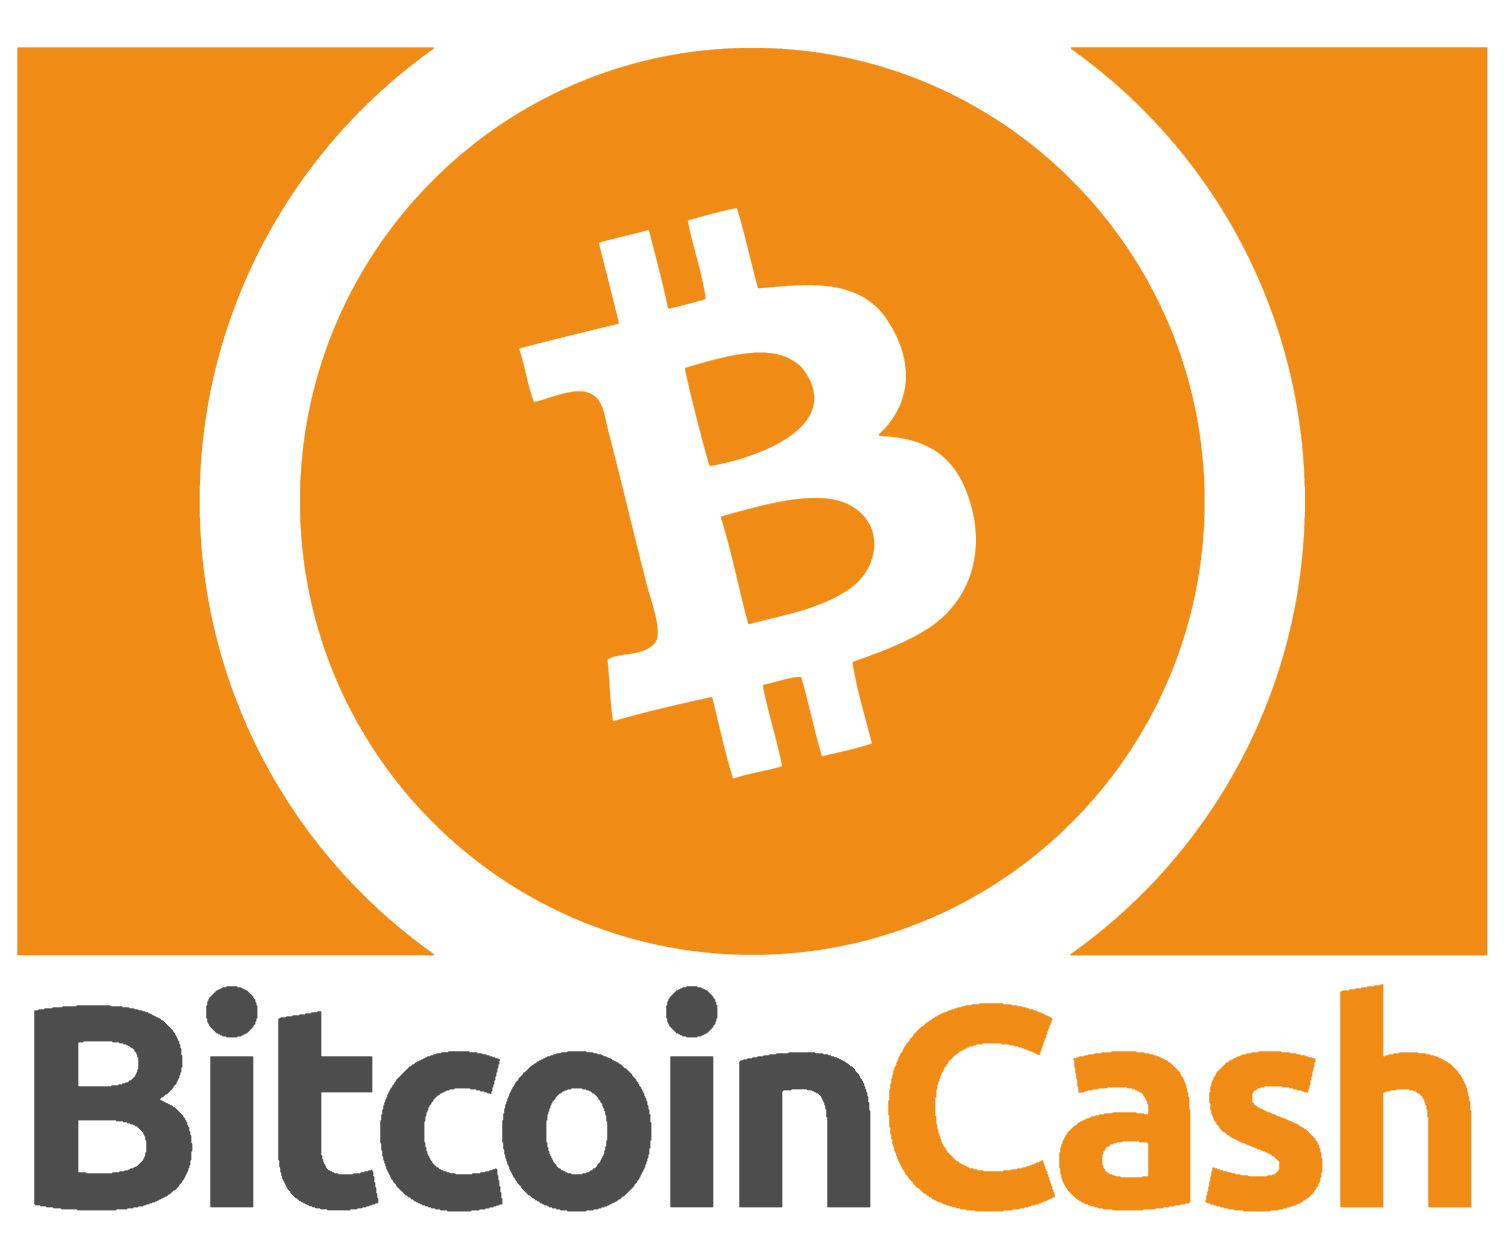 profitabilitatea zilnică a bitcoin cash